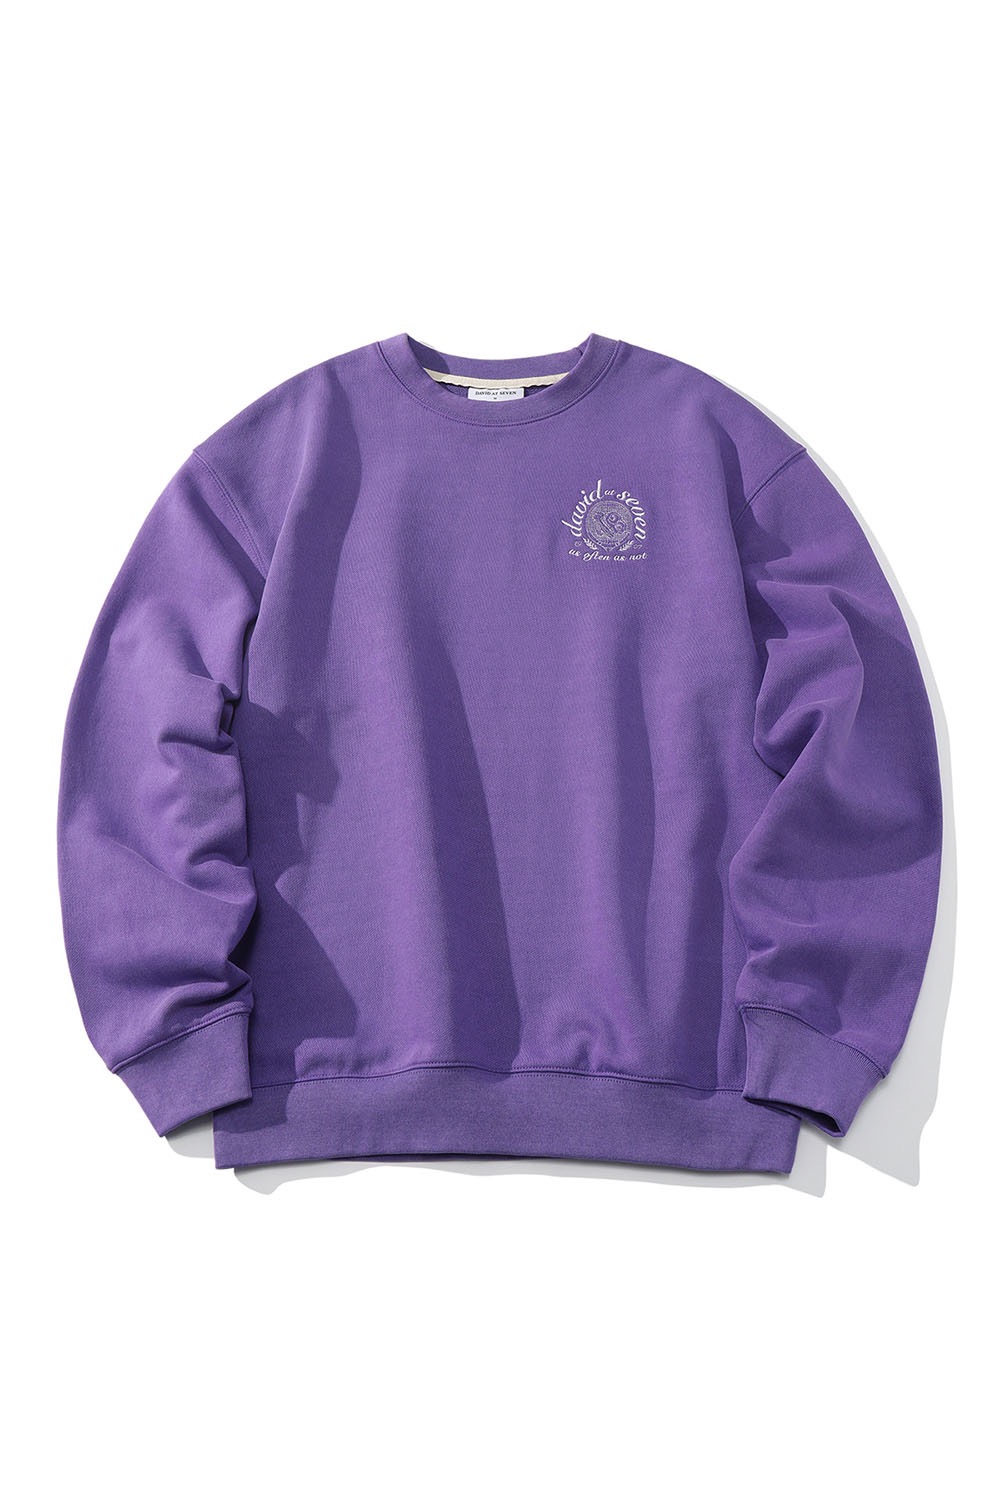 sunny-side up racket sweatshirts washed  (purple) RICHEZ